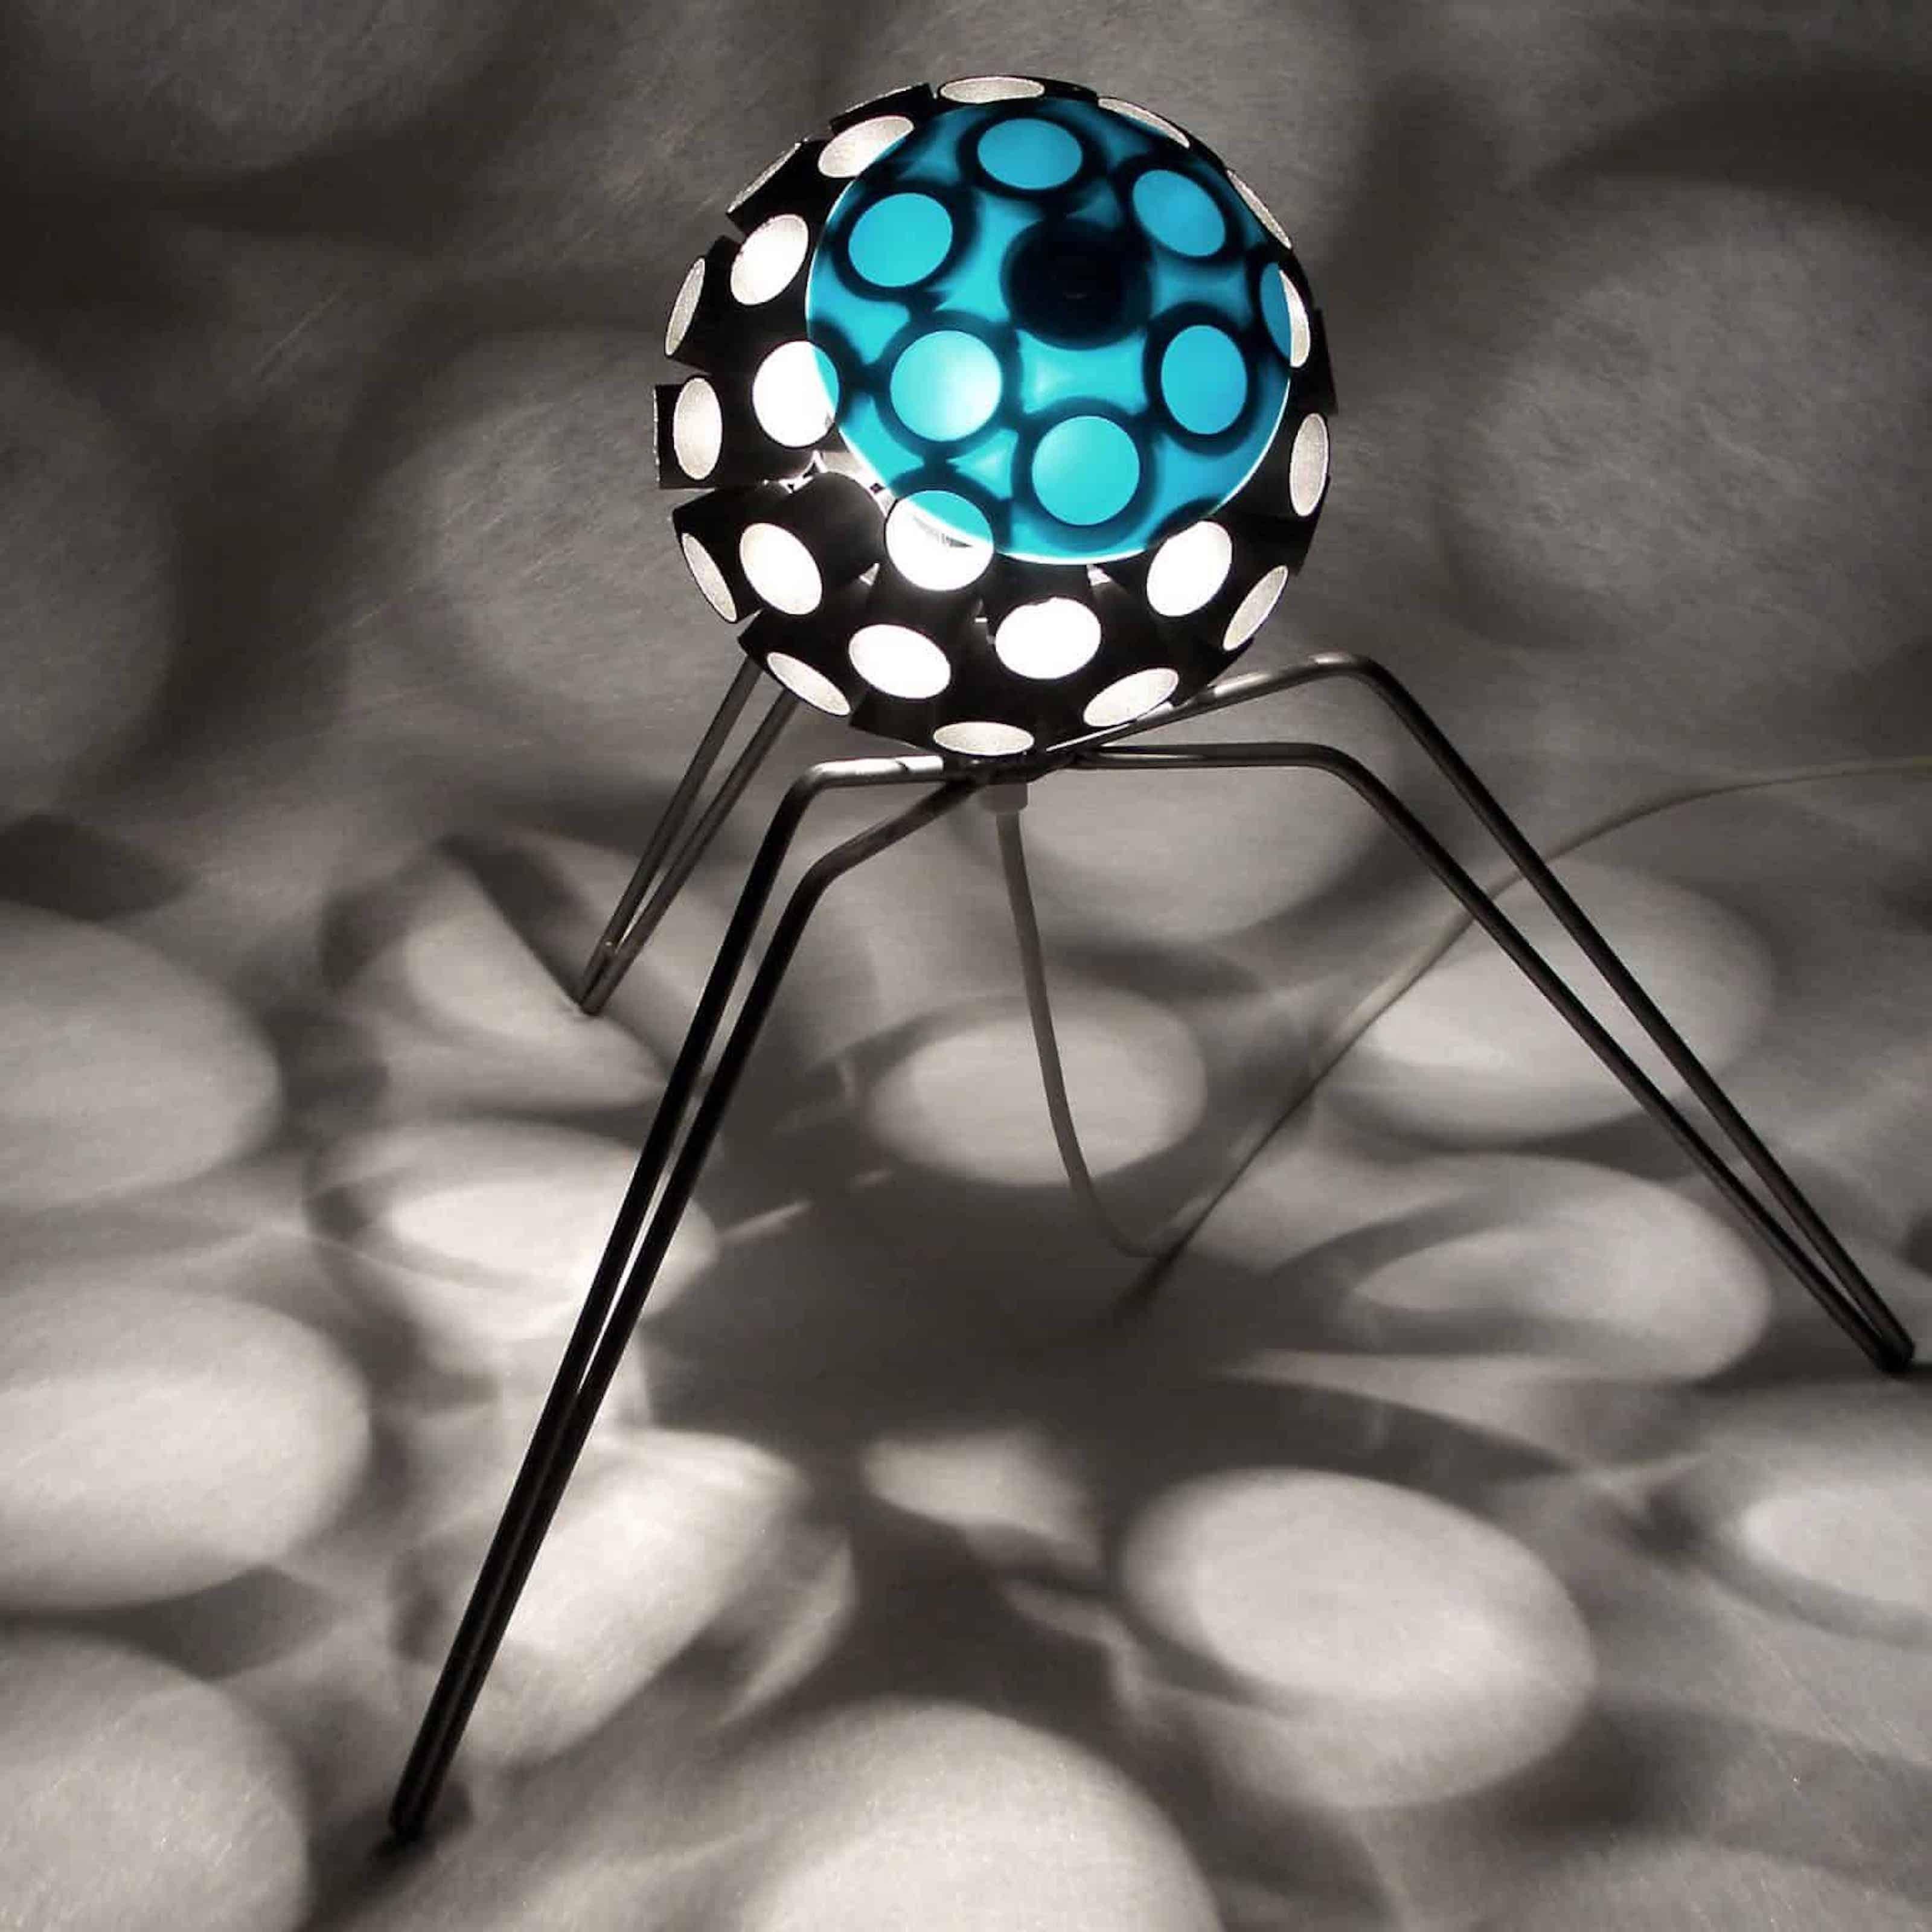 Stefan Traloc Abstract Sculpture –  Interieurlampe – „Virus“ mit Schattenprojektion – einzigartig, zeitgenössisch – hoch